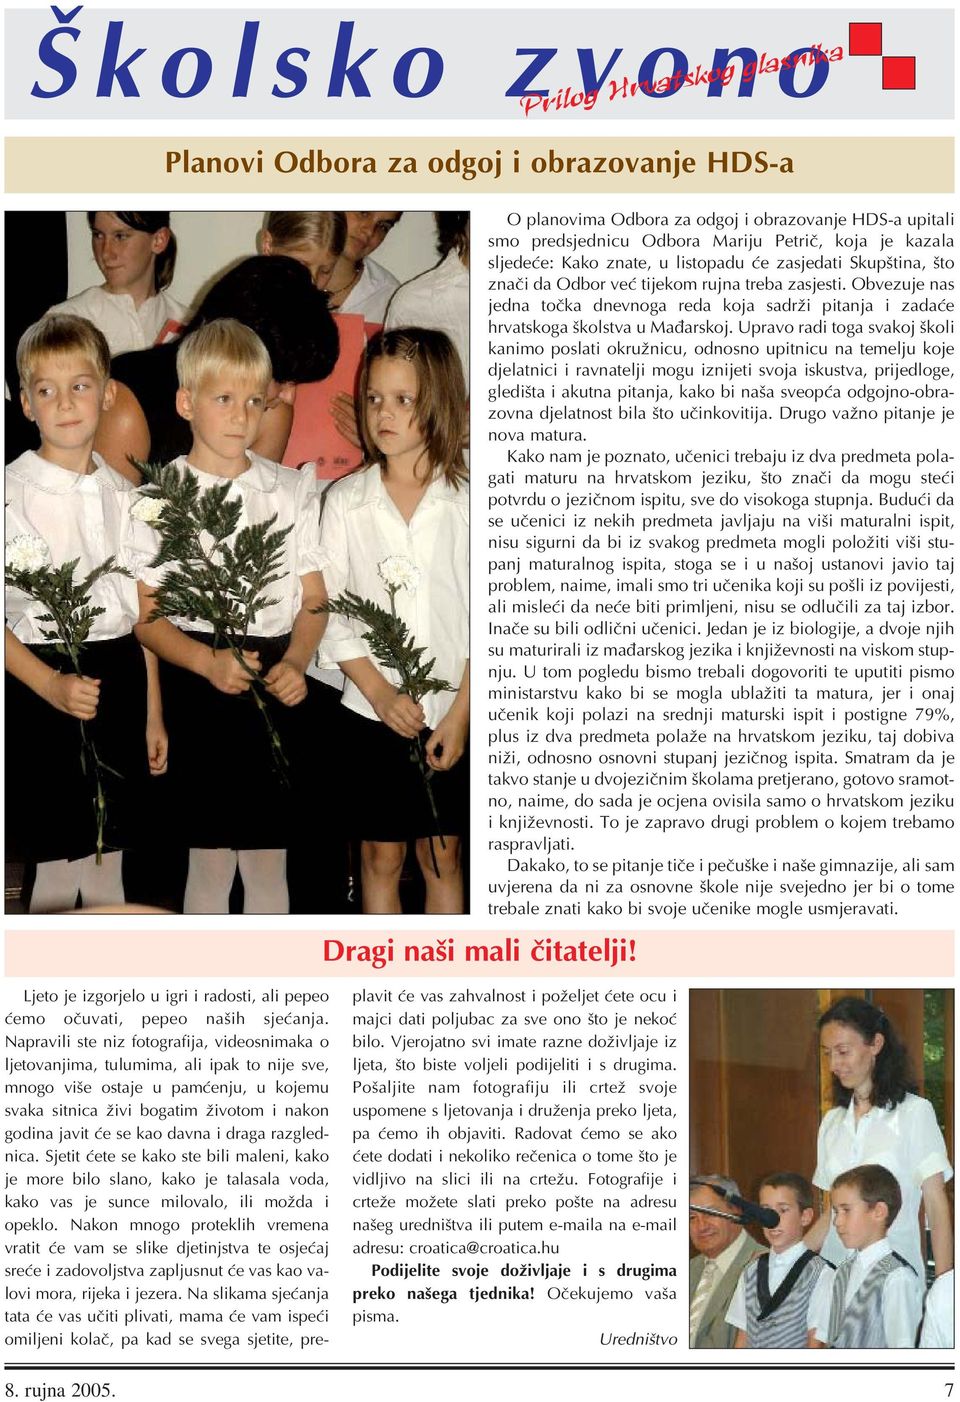 rujna treba zasjesti. Obvezuje nas jedna točka dnevnoga reda koja sadrži pitanja i zadaće hrvatskoga školstva u Mađarskoj.